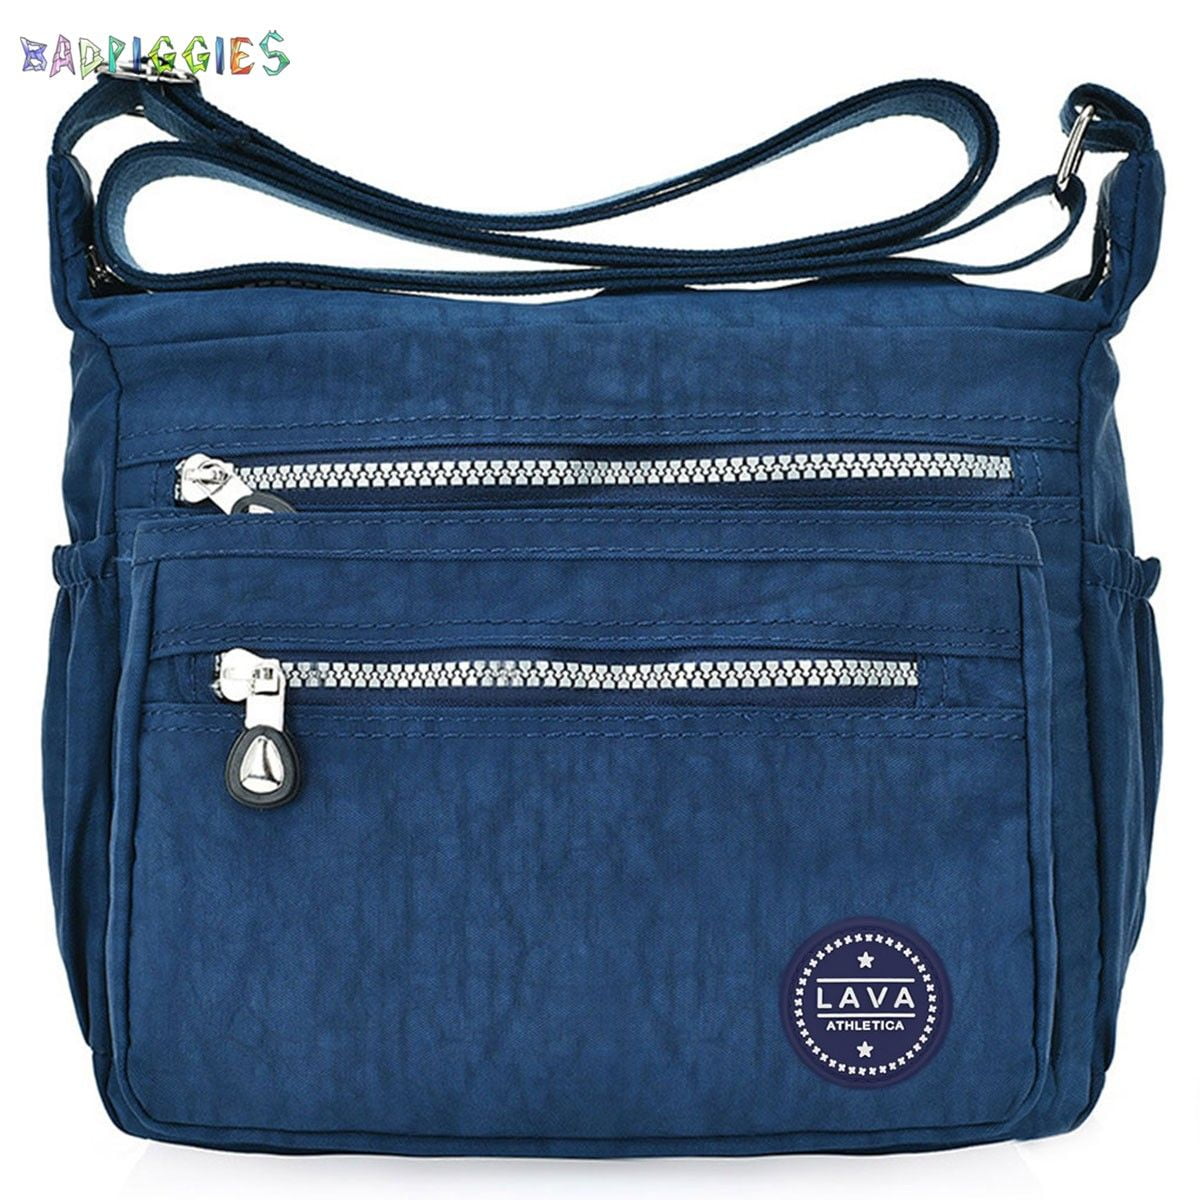 Sara Dark Blue Leather Cross body Bag Bags & Purses Handbags Crossbody Bags 